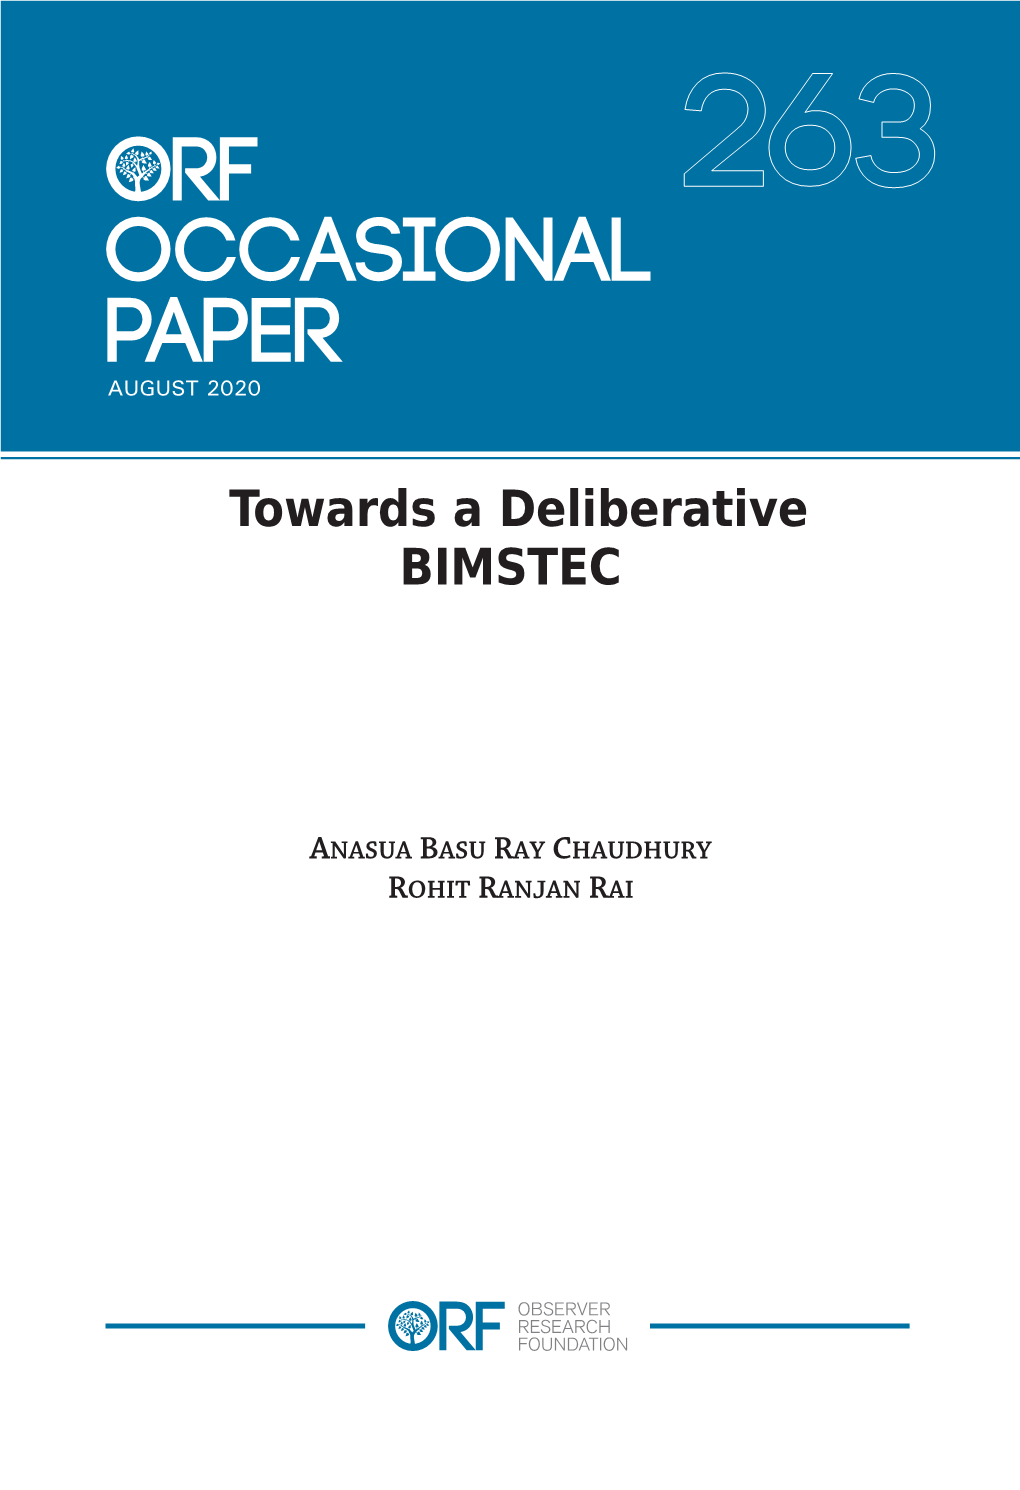 Towards a Deliberative BIMSTEC